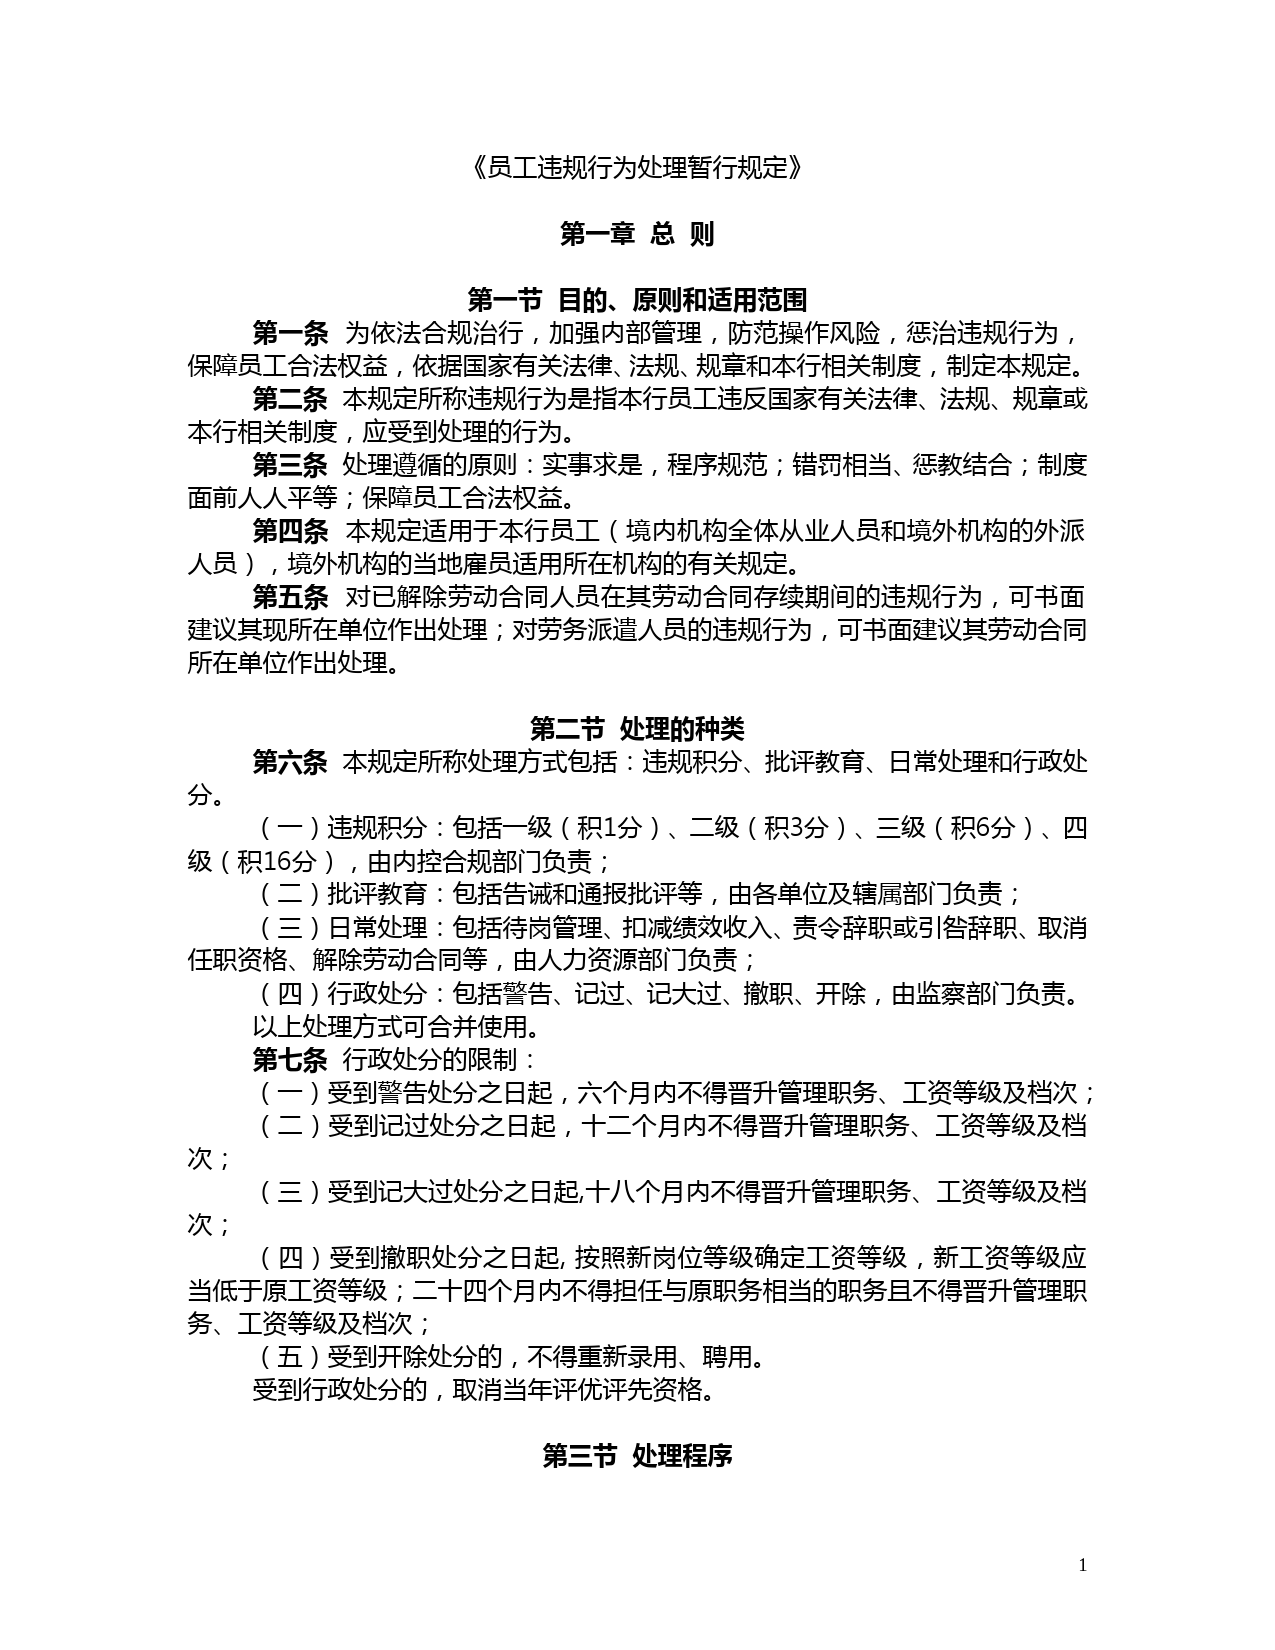 中国工商银行员工违规行为处理暂行规定